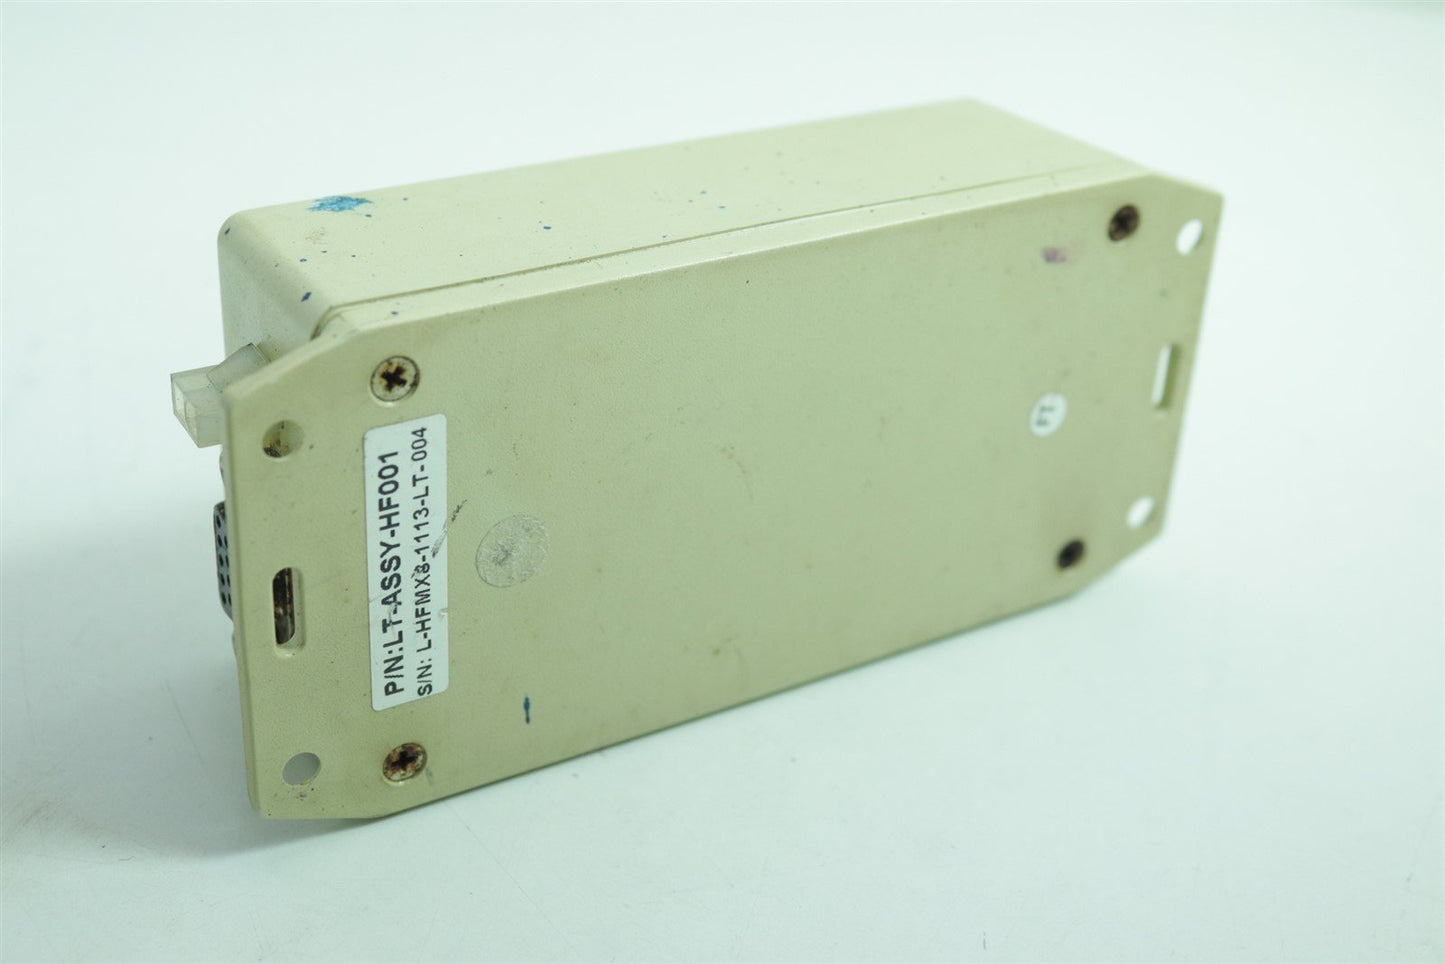 KORNIT DIGITAL RFID Assembly of Reader 06-MPLX-0002 & 6 or 8 Antenna